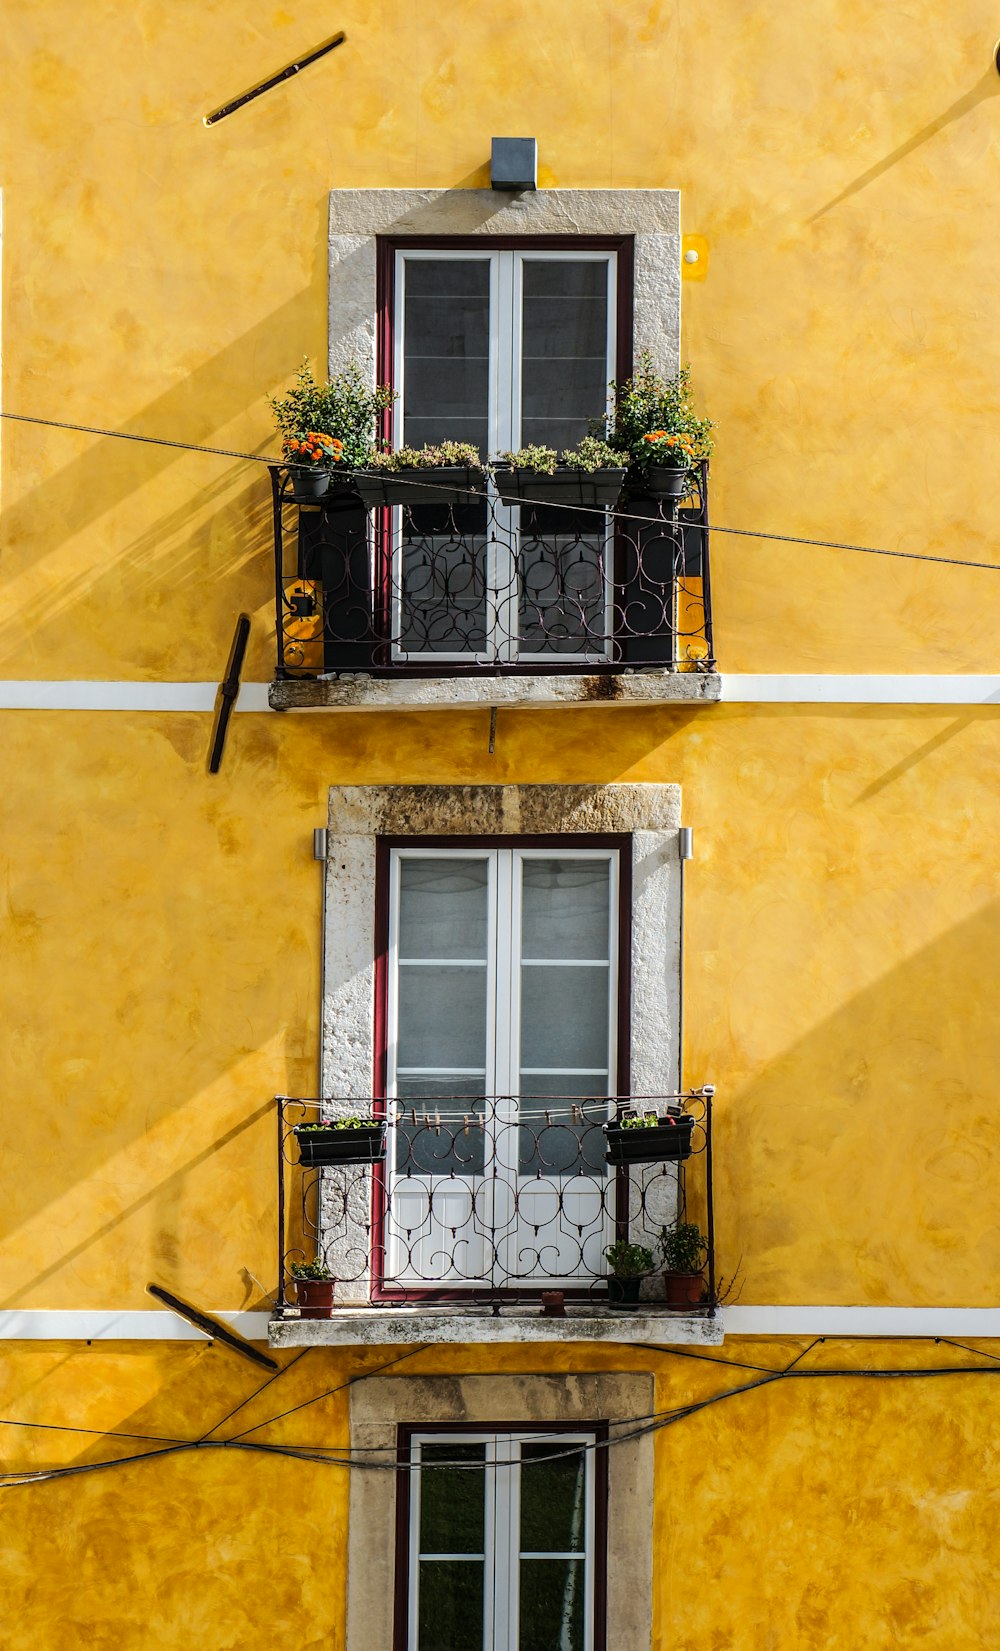 painéis de madeira branca da janela e parede pintada de amarelo